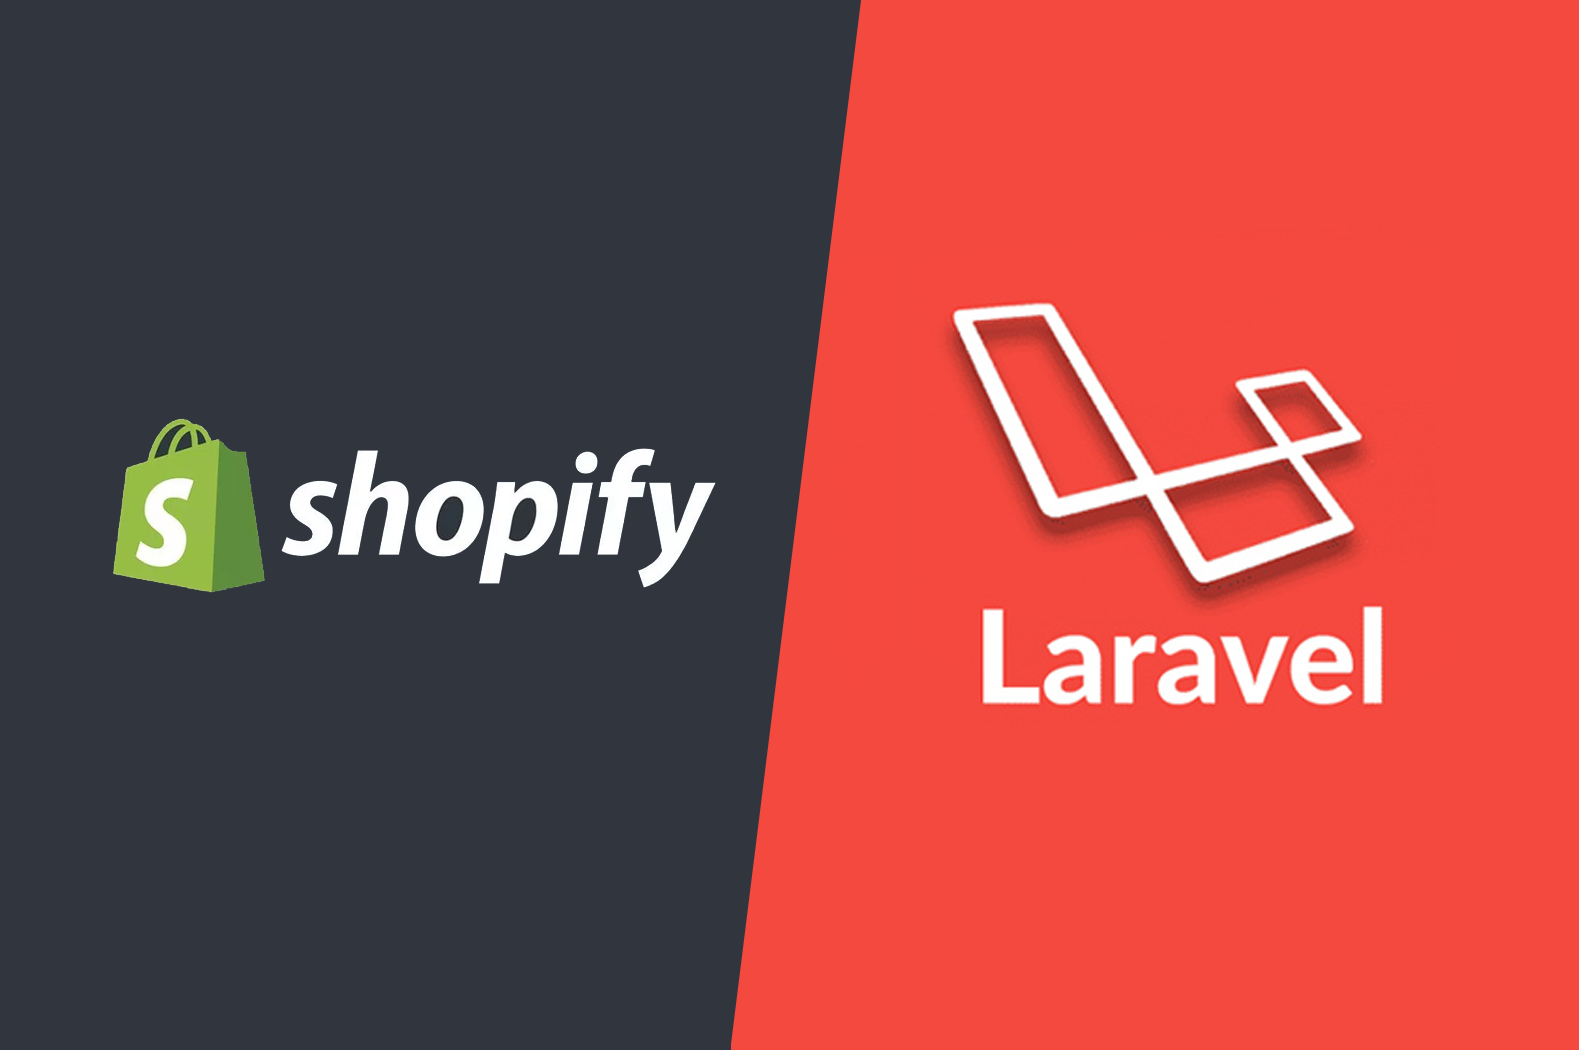 shopify app laravel